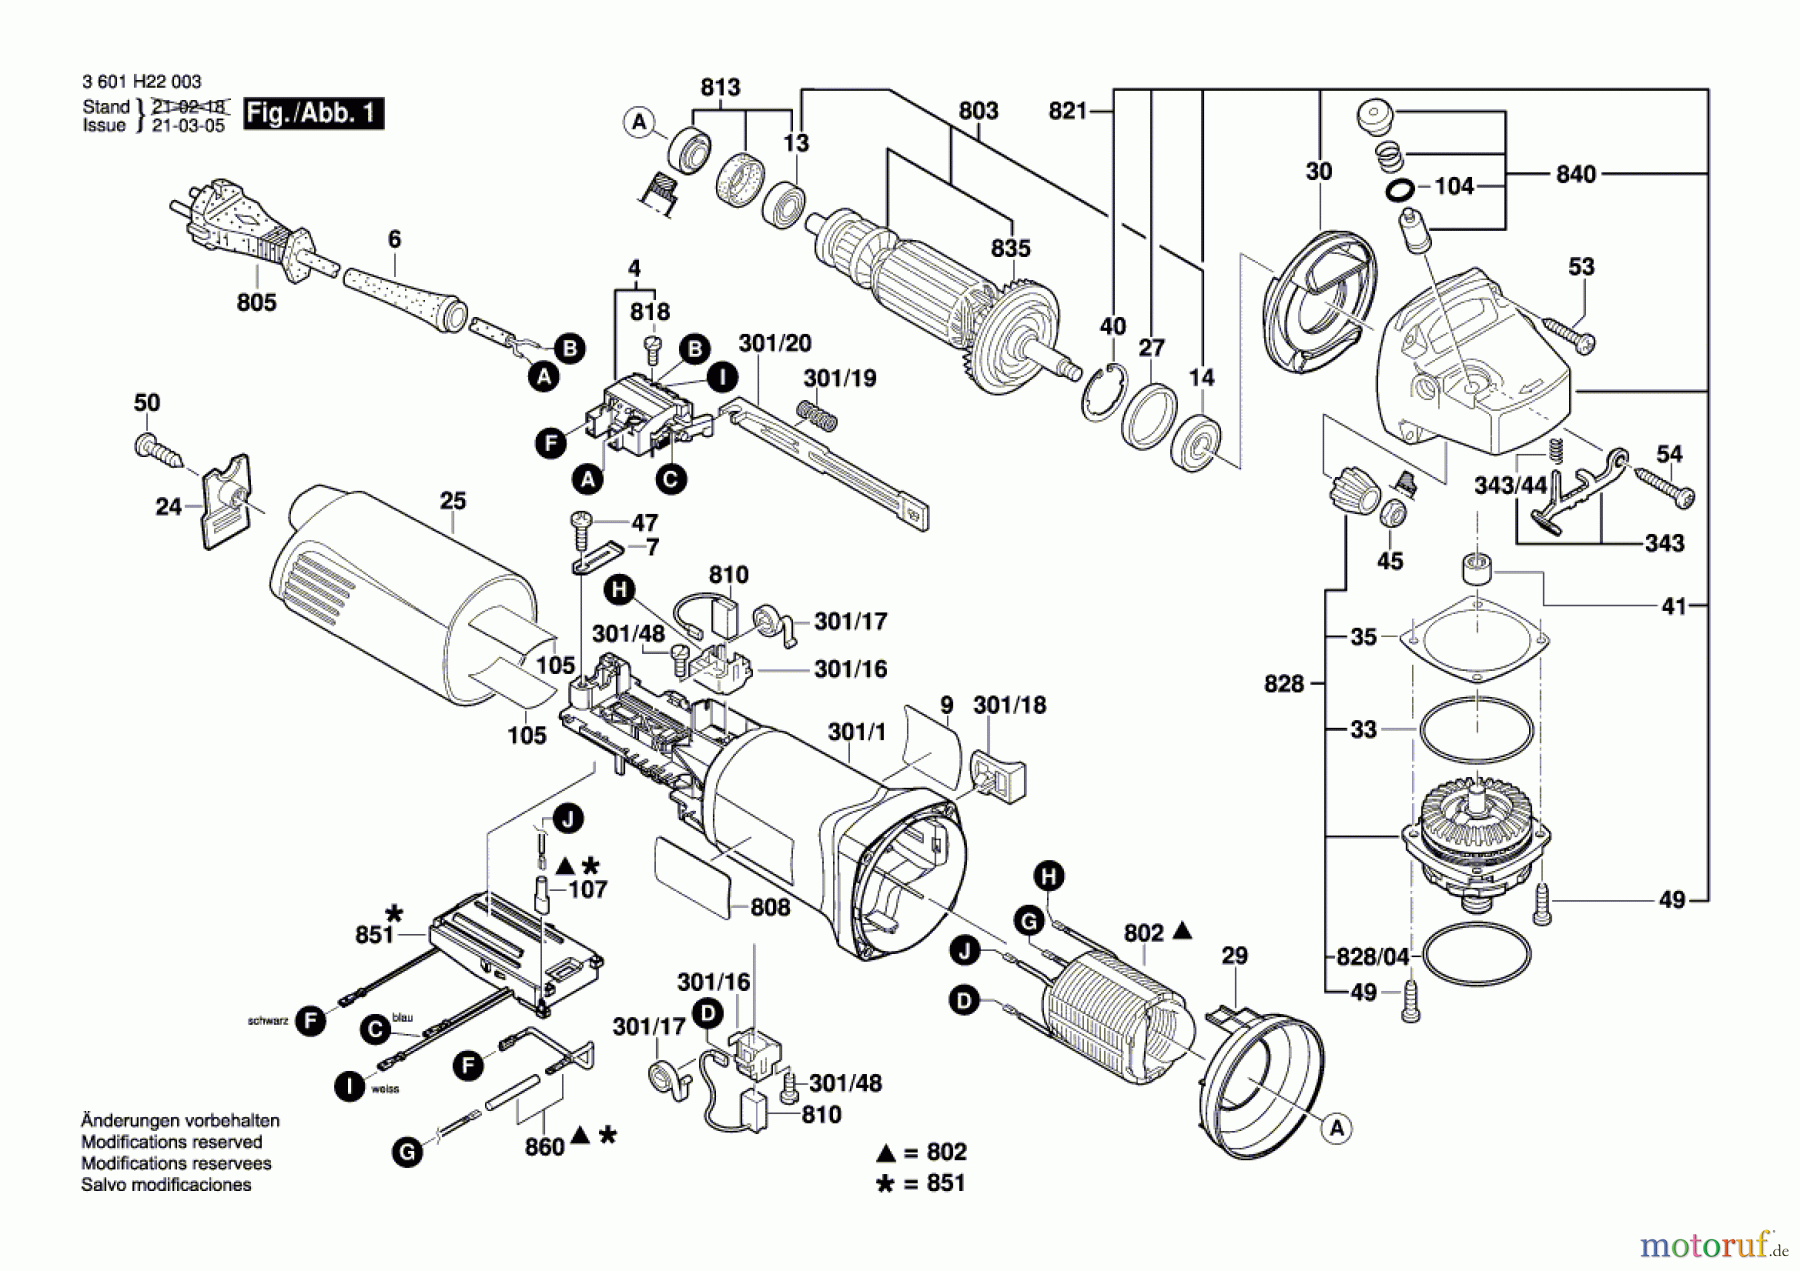  Bosch Werkzeug Winkelschleifer GWS 1100 Seite 1